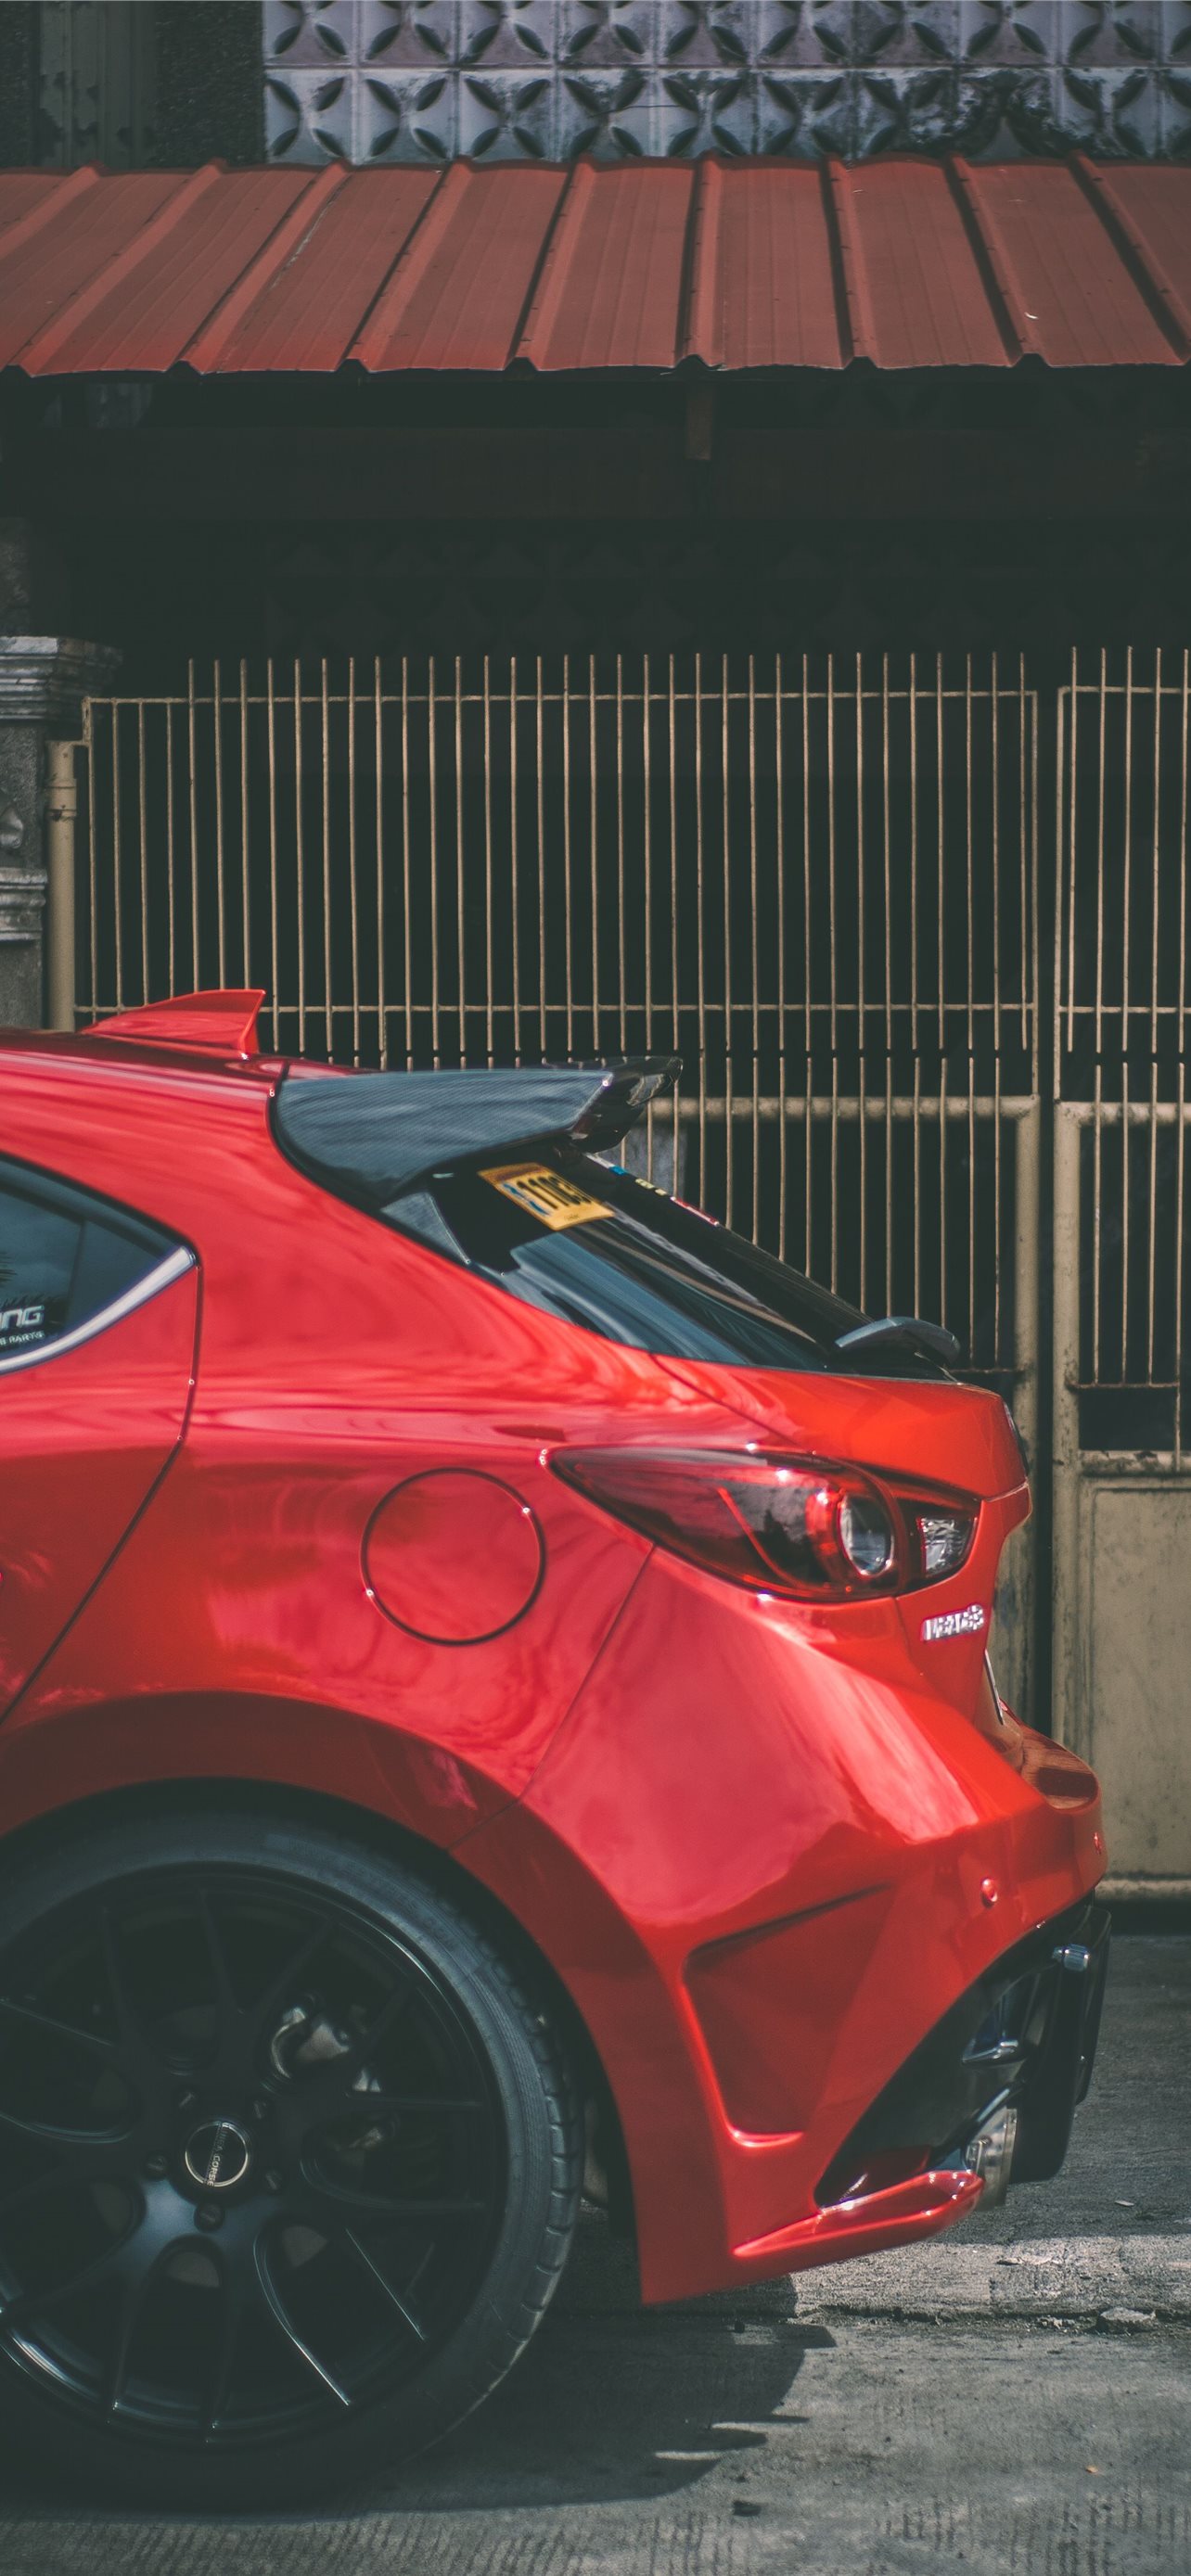 Mazda 3 mang đến một trải nghiệm lái xe tuyệt vời với thiết kế độc đáo và hiệu suất đáng kinh ngạc. Với hình ảnh sống động, hãy cùng khám phá những tính năng và công nghệ đột phá của chiếc xe này. 